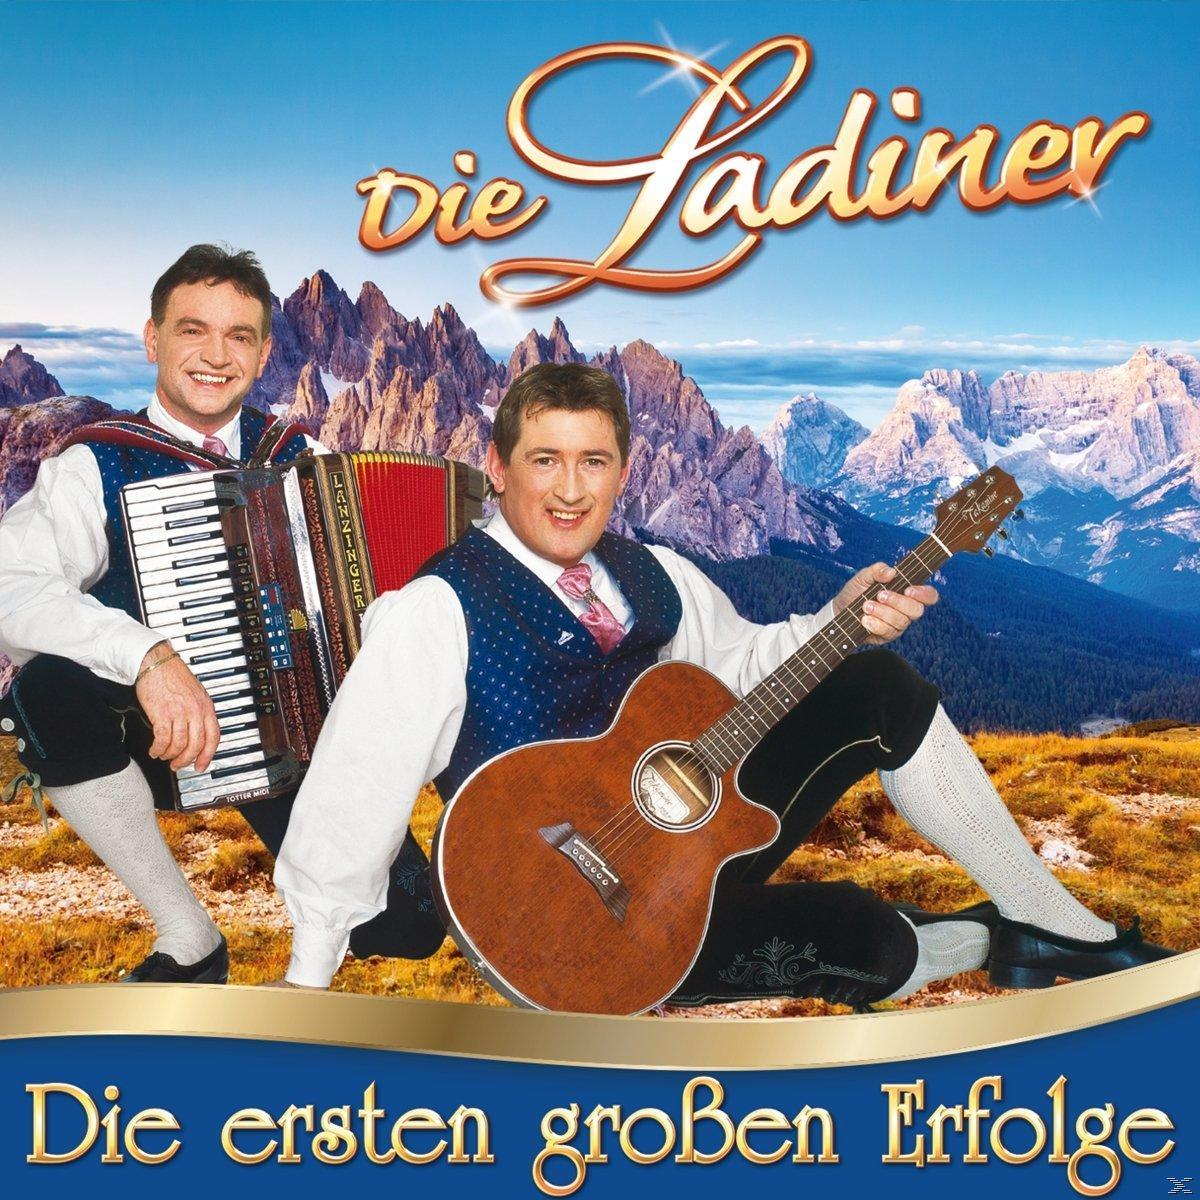 Die Erfolge - großen Ladiner (CD) ersten Die -